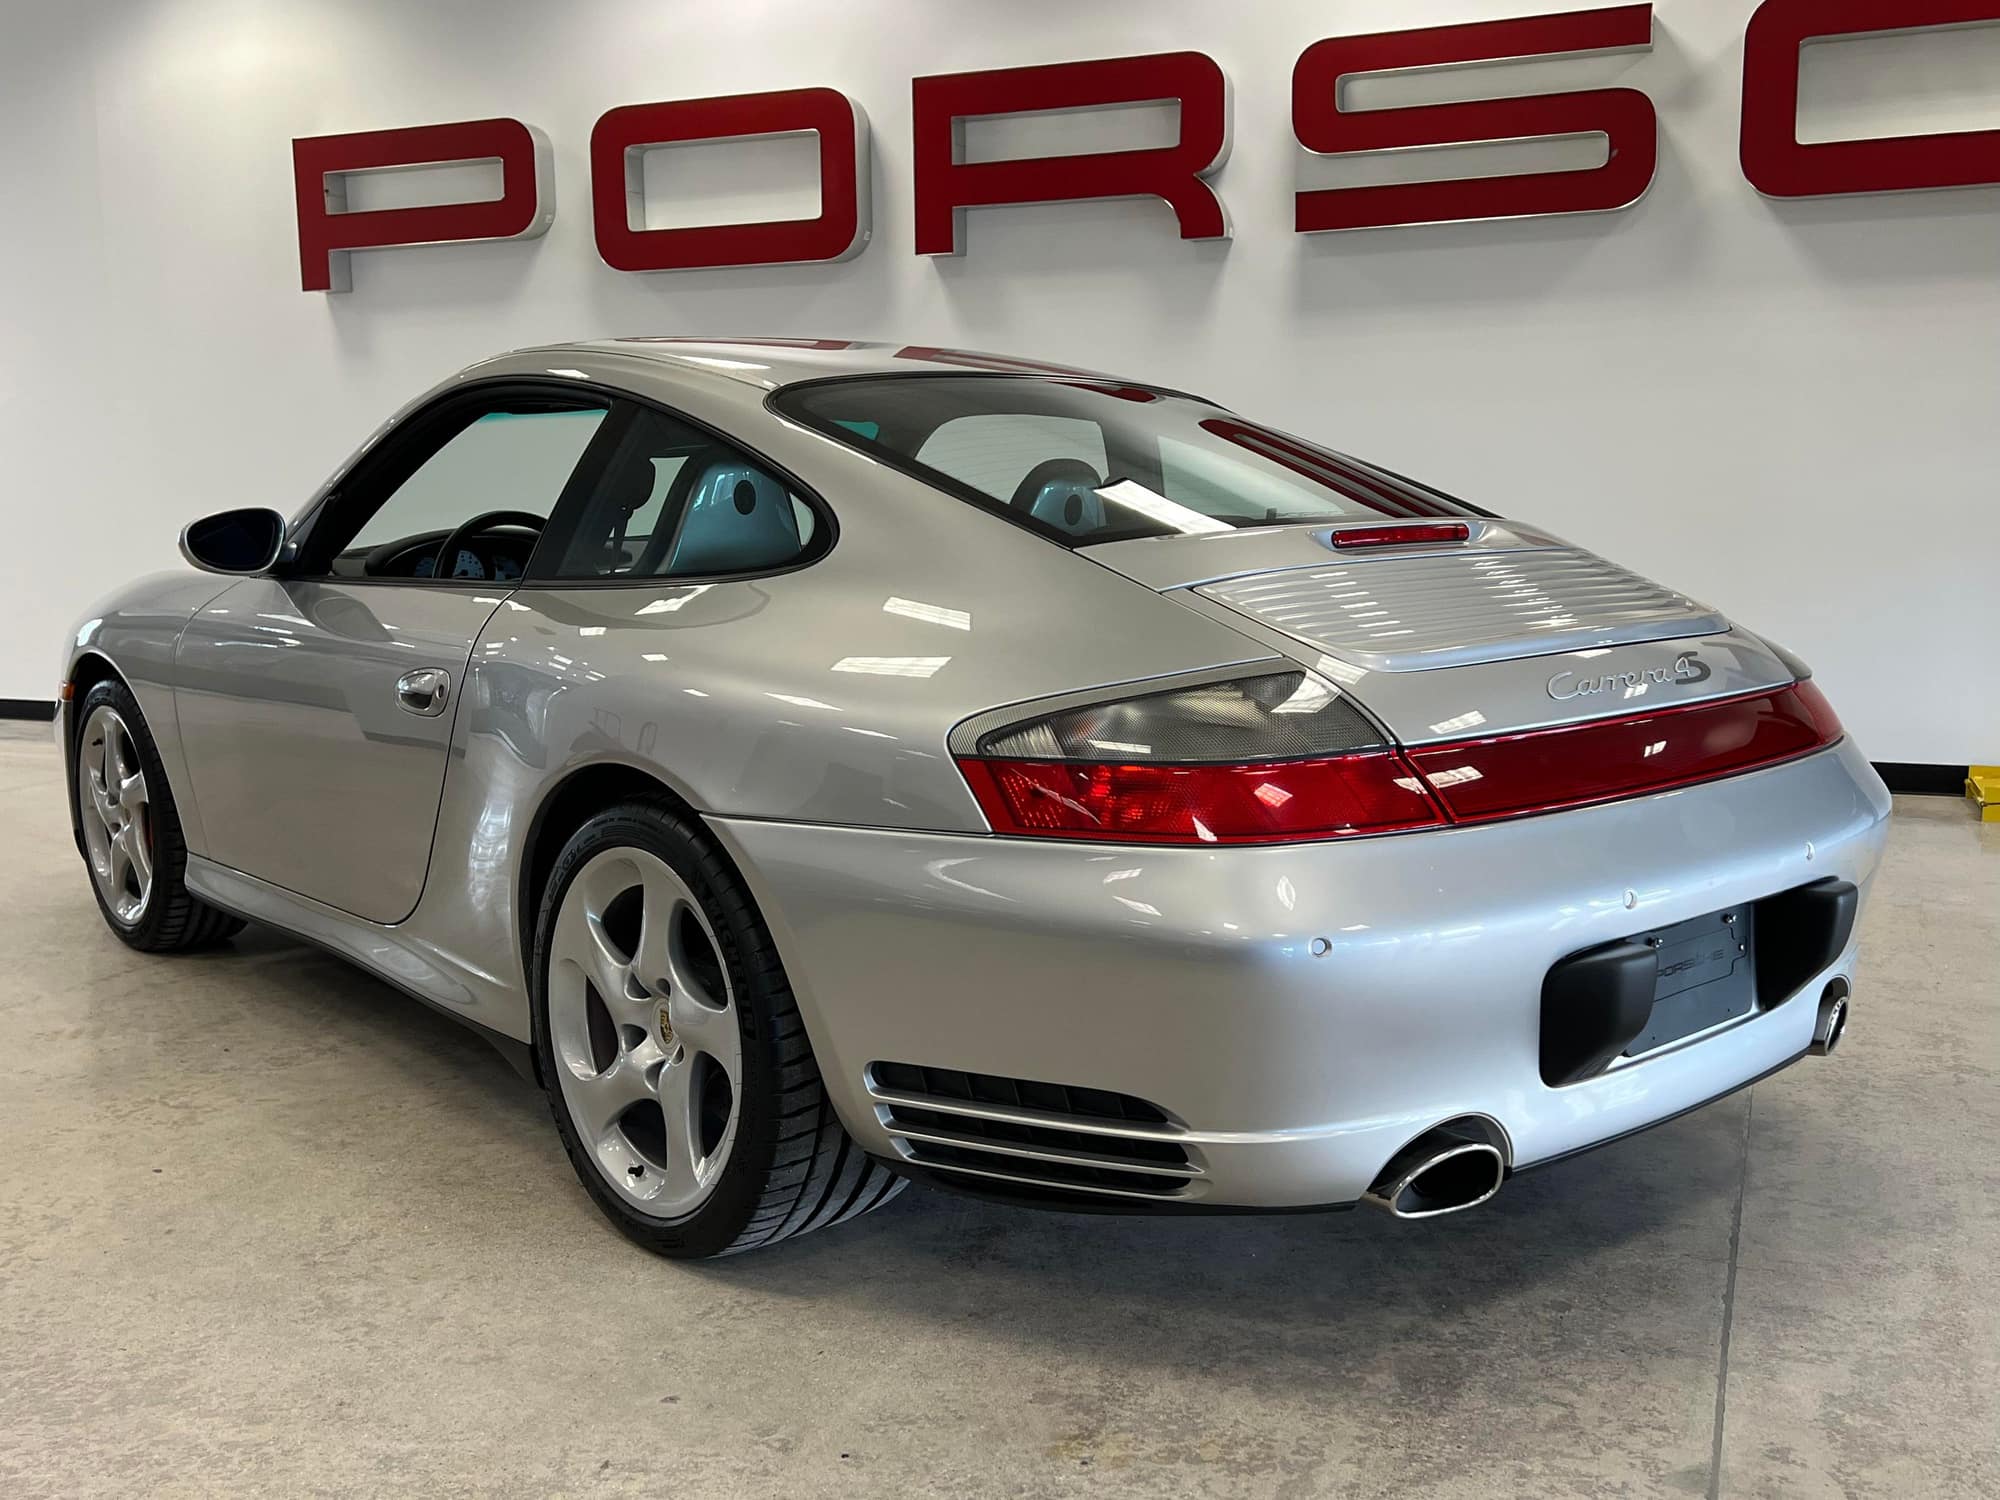 2002 Porsche 911 - 2002 Porsche 911 (996) Carrera 4S - 6-speed - 22k miles - Sport Seats/Sport Exhaust - Used - Detroit, MI 48236, United States